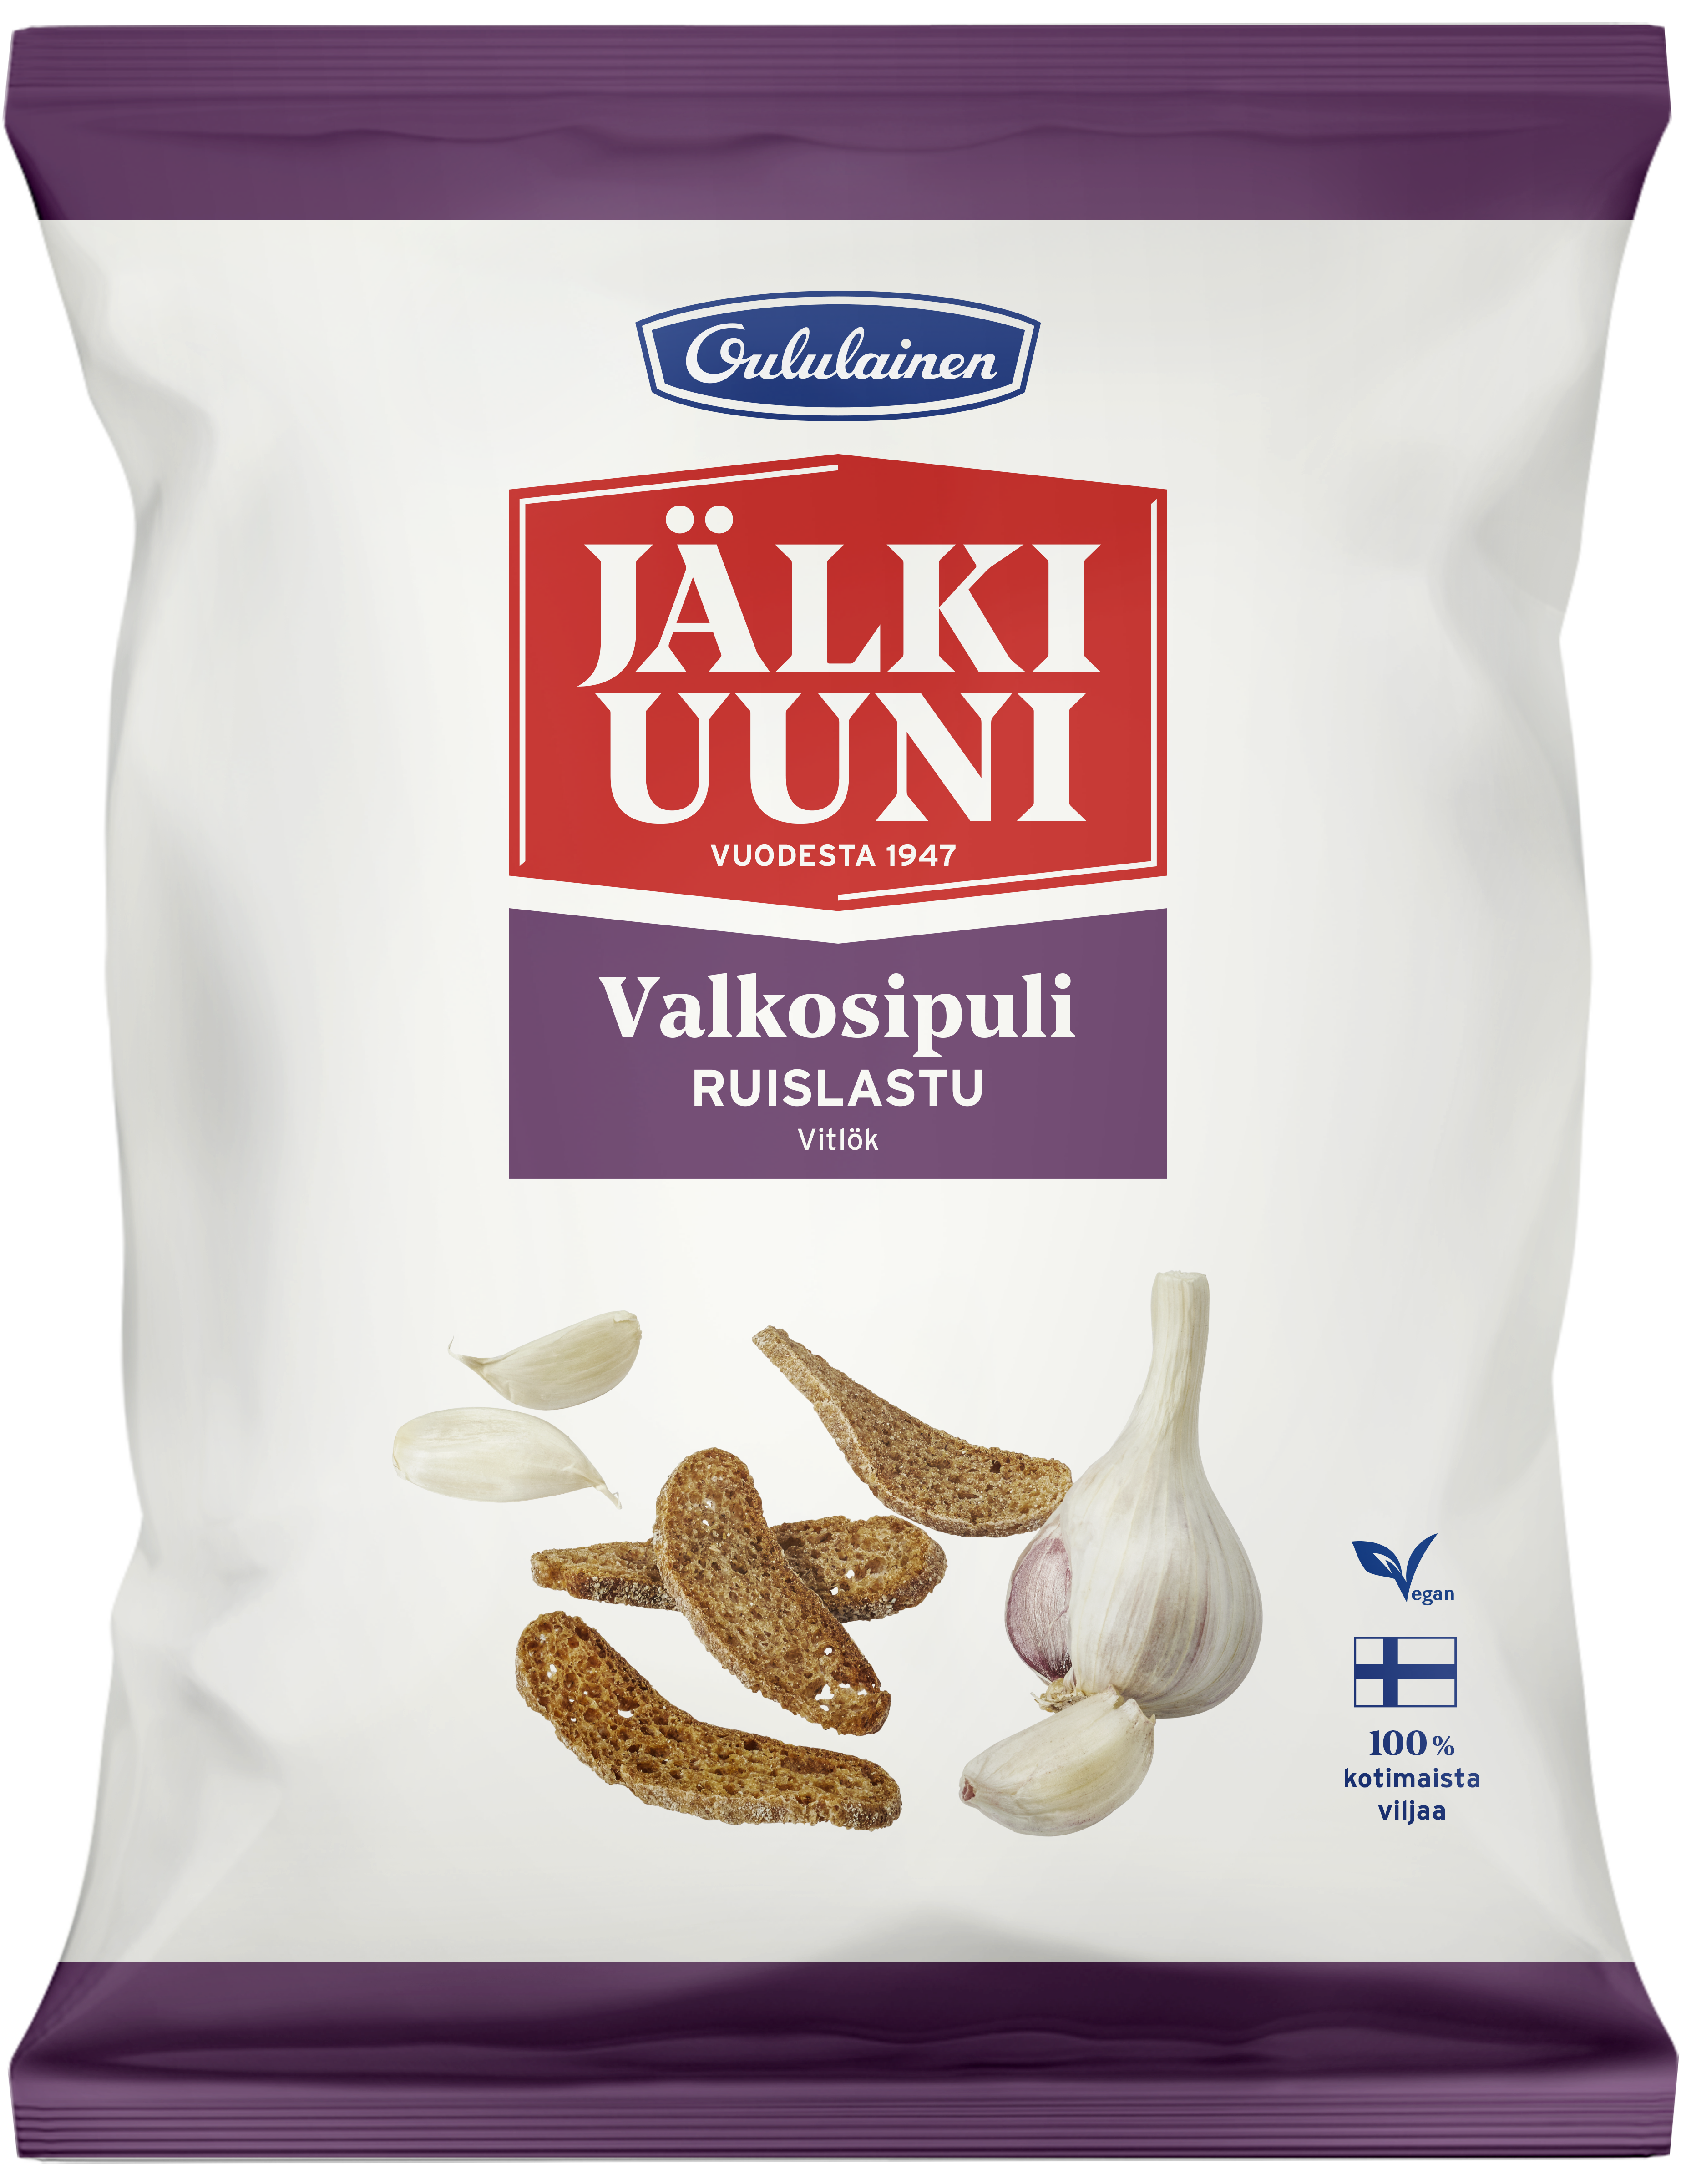 Oululainen Jälkiuuni Rye chip Garlic 130g